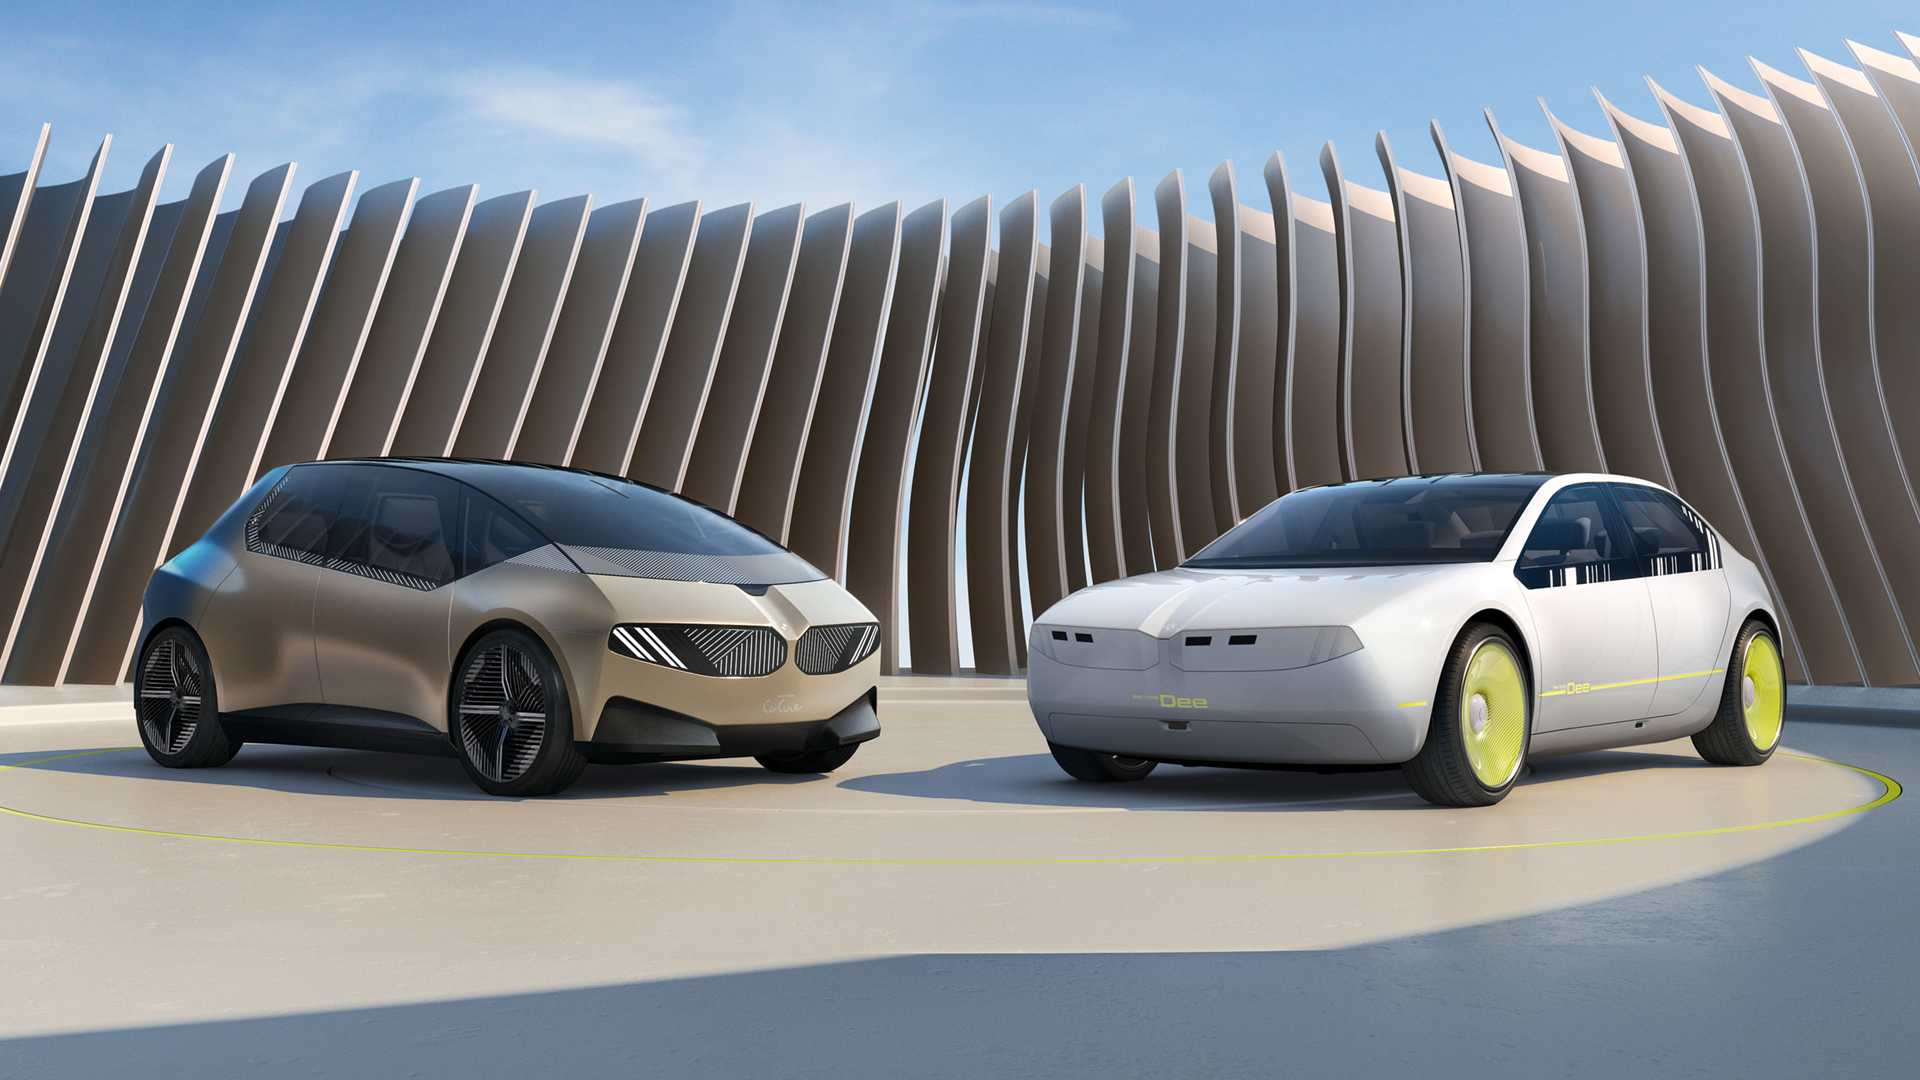 BMW ha presentato la concept car camaleontica i Vision Dee, che può cambiare colore della carrozzeria ed esprimere emozioni